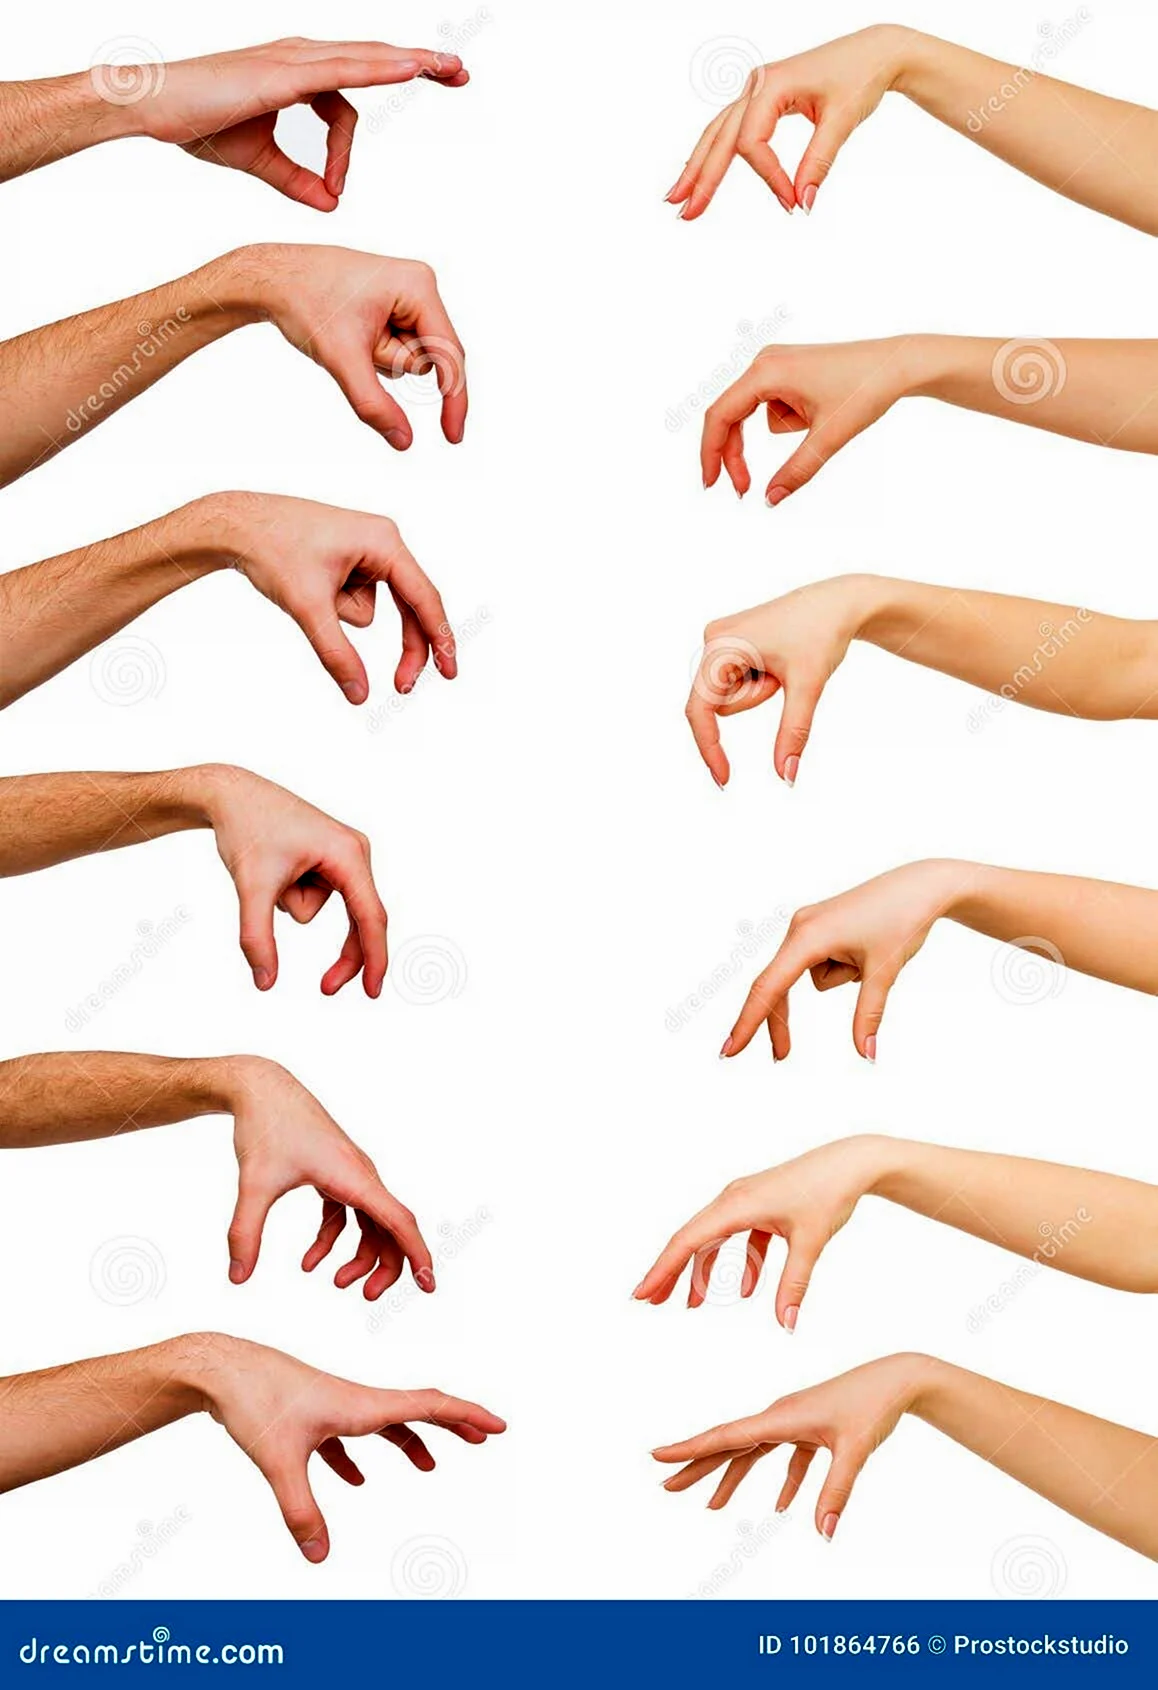 Набор женских рук на белом фоне